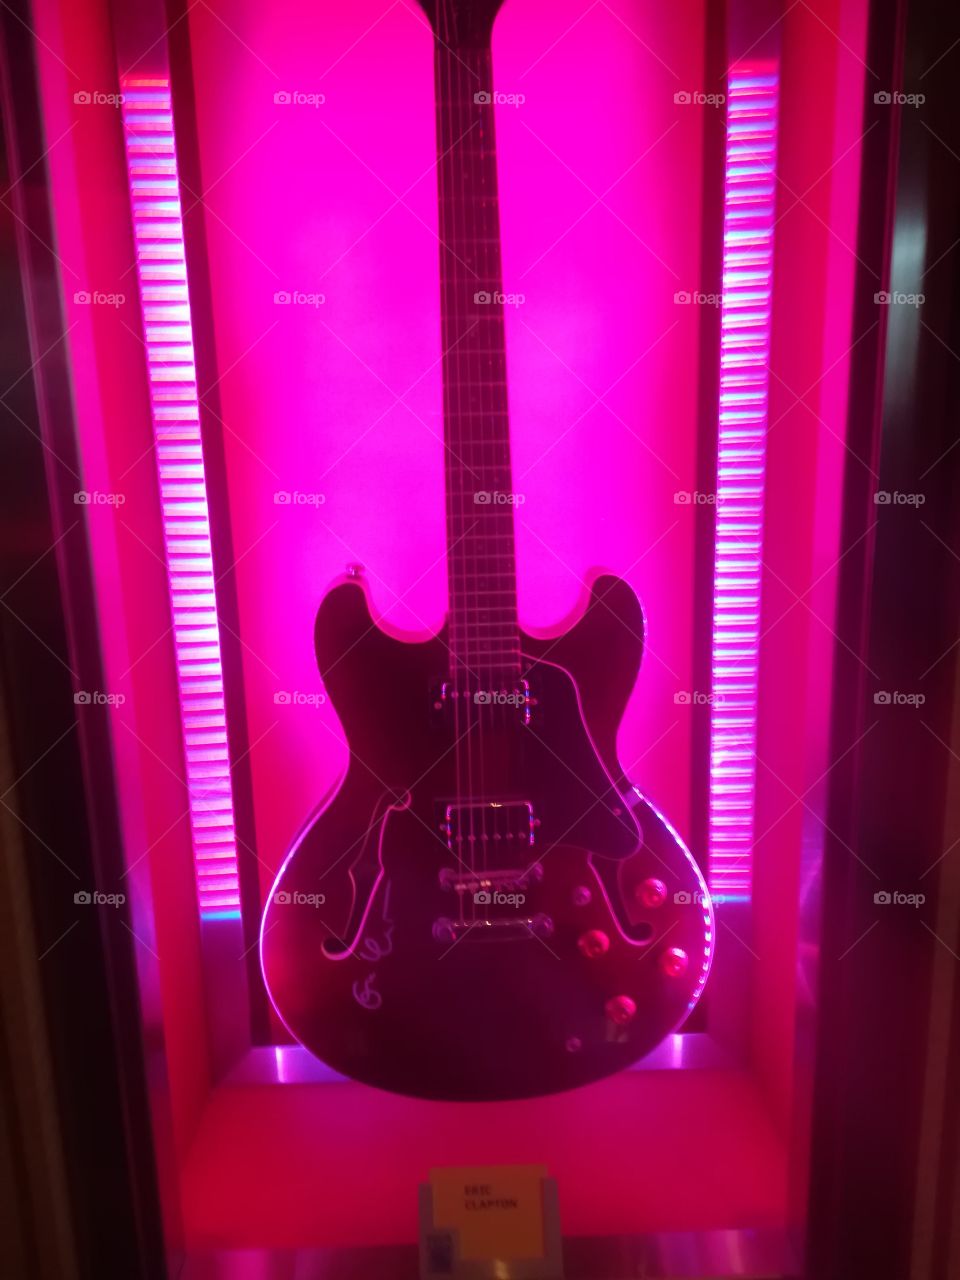 Eric Clapton's guitar in Disneyland Paris